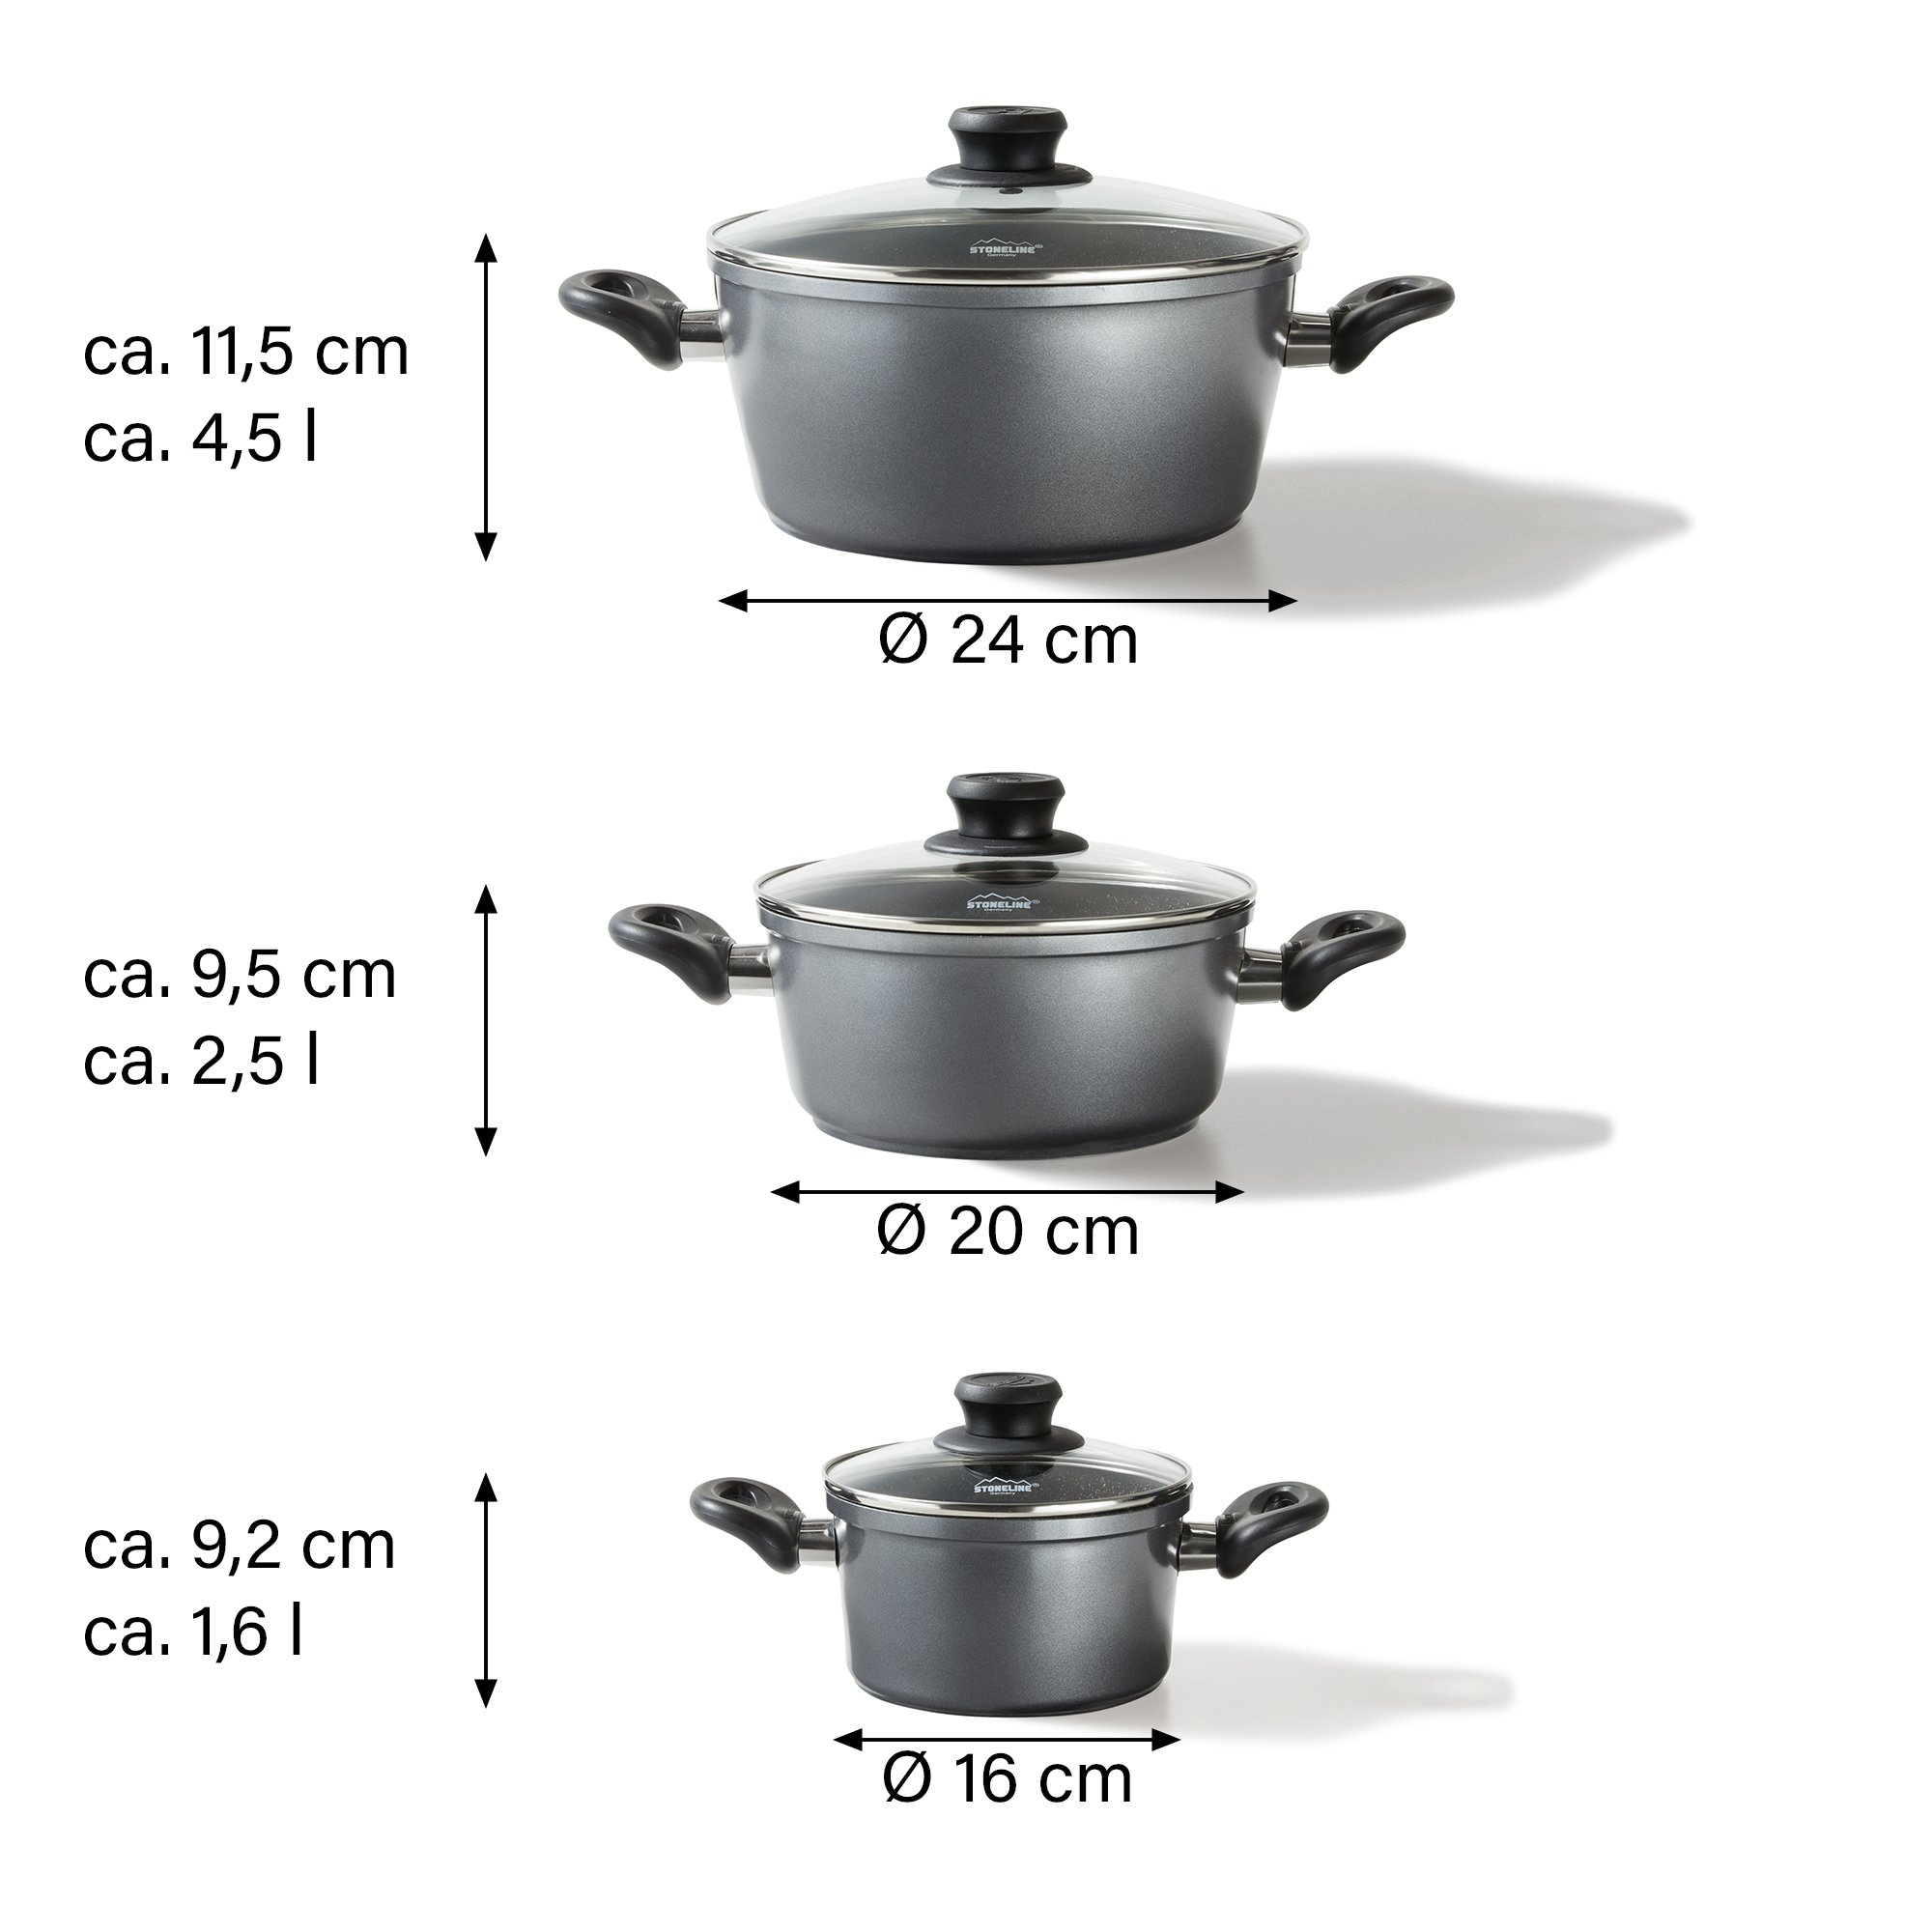 STONELINE® set de casseroles 6 pièces avec couvercle en verre, casseroles en fonte d'aluminium avec revêtement pour four et induction